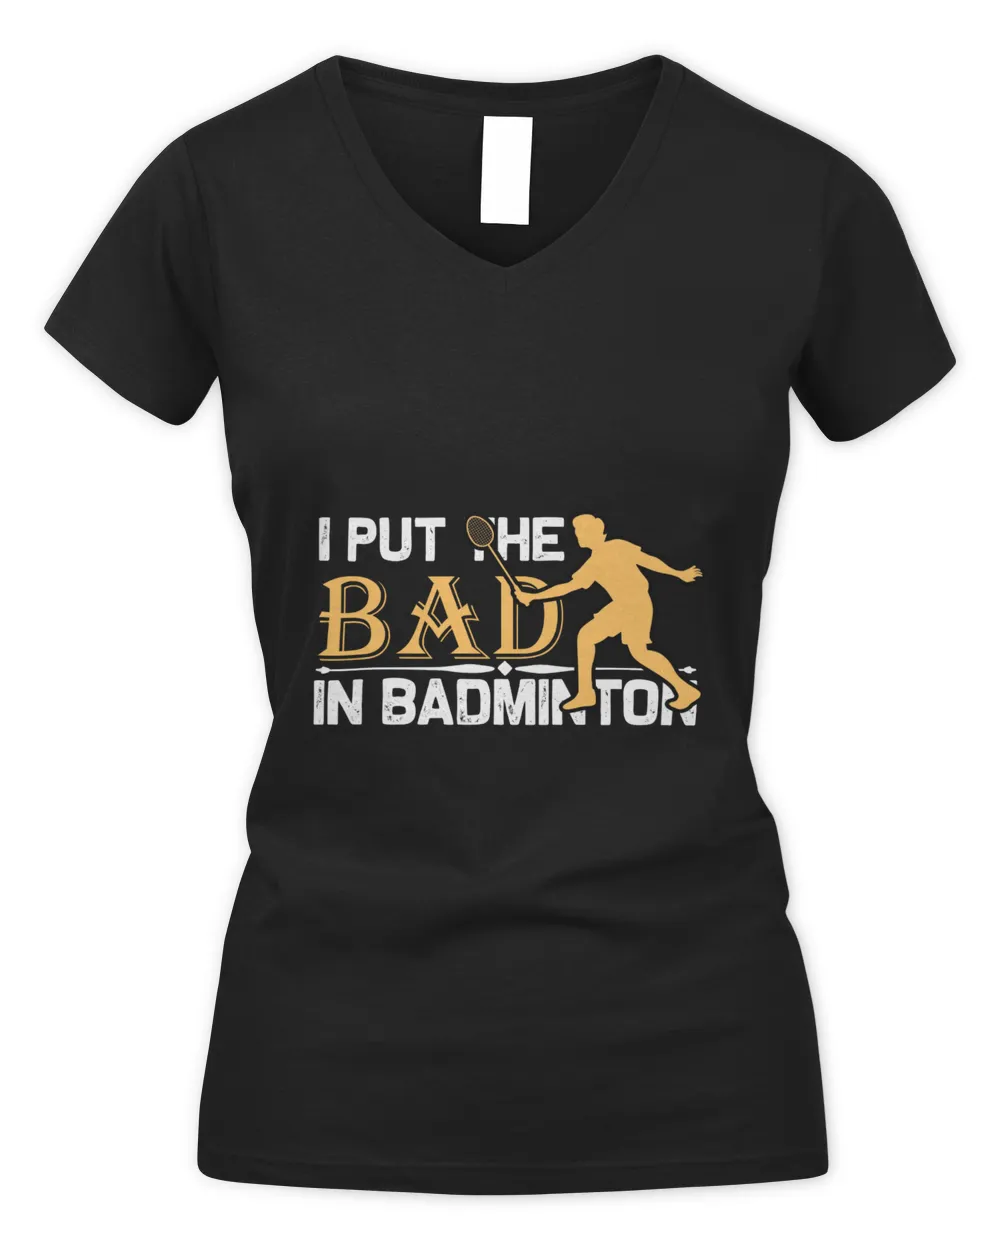 I Put Shirt, Badminton Shirt,Badminton T-shirt,Funny Badminton Shirt, Badminton Gift,Sport Shirt